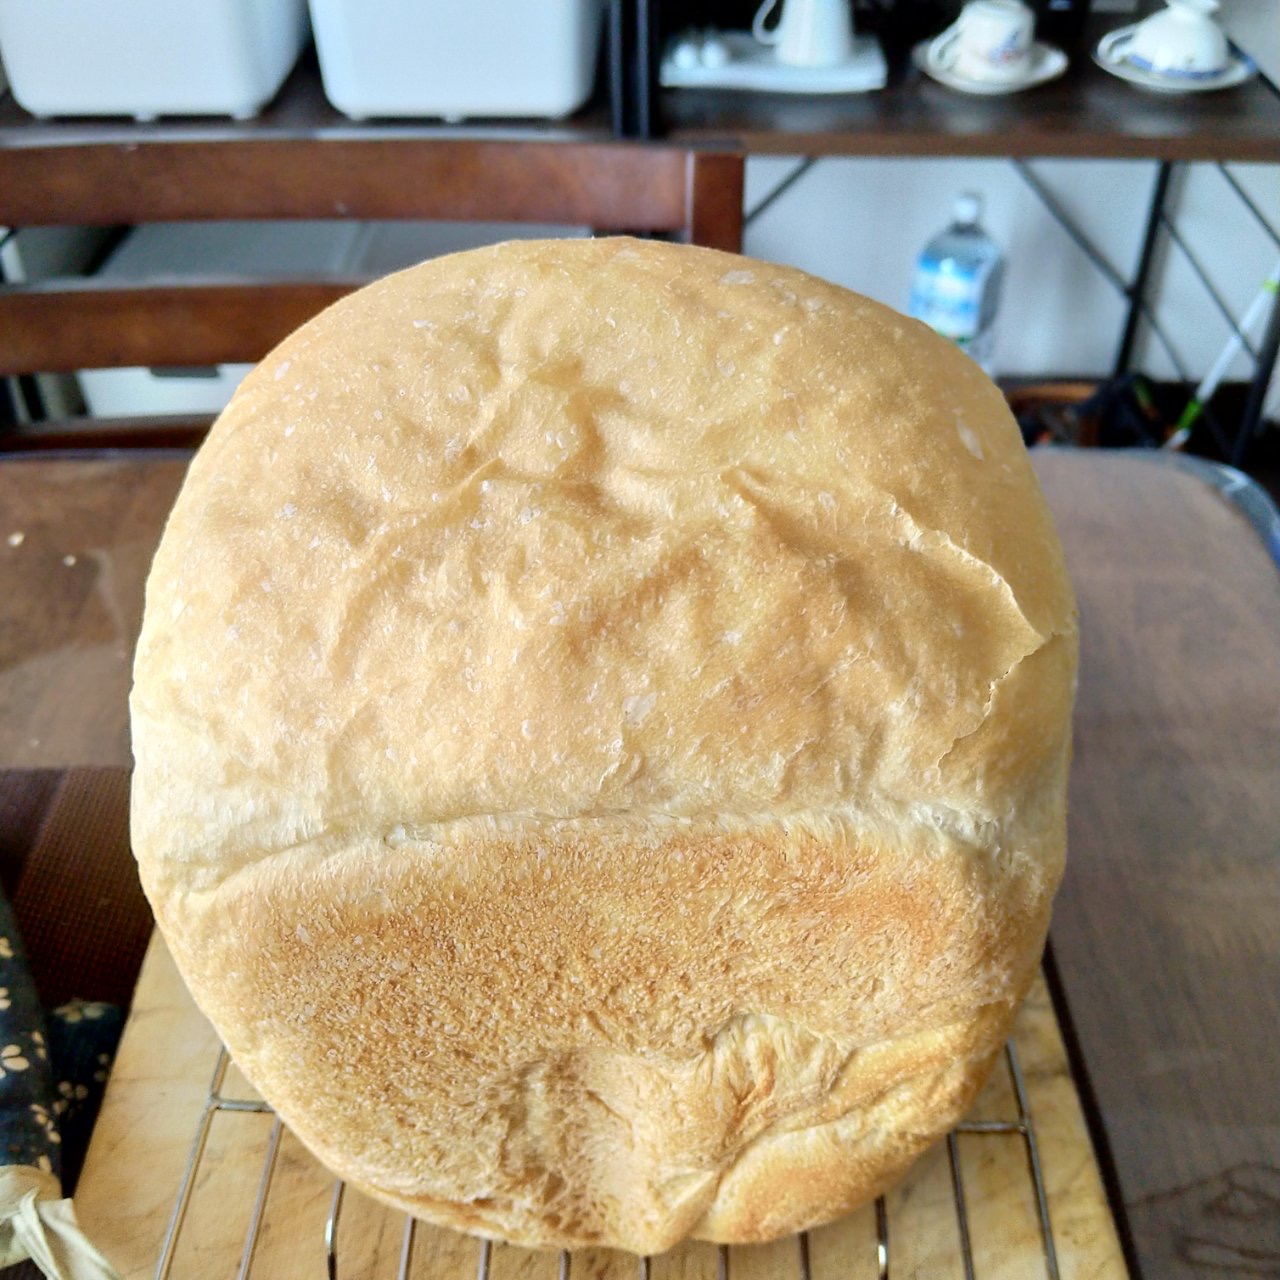 ポン太郎さまから送られてきたホームベーカリーで焼いたパンの写真